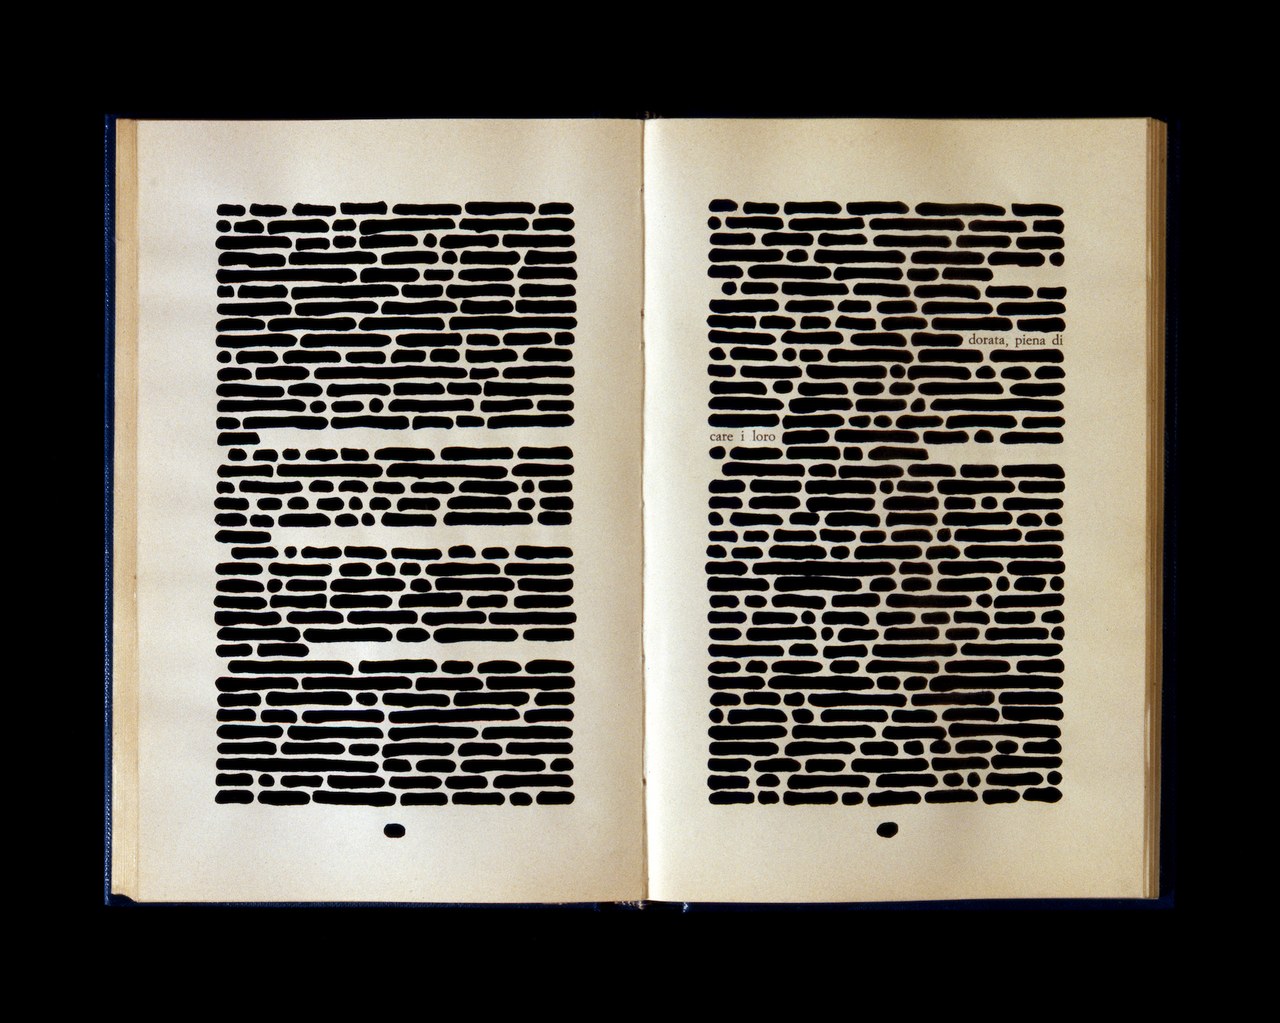  Emilio Isgrò, Libro cancellato, 1974